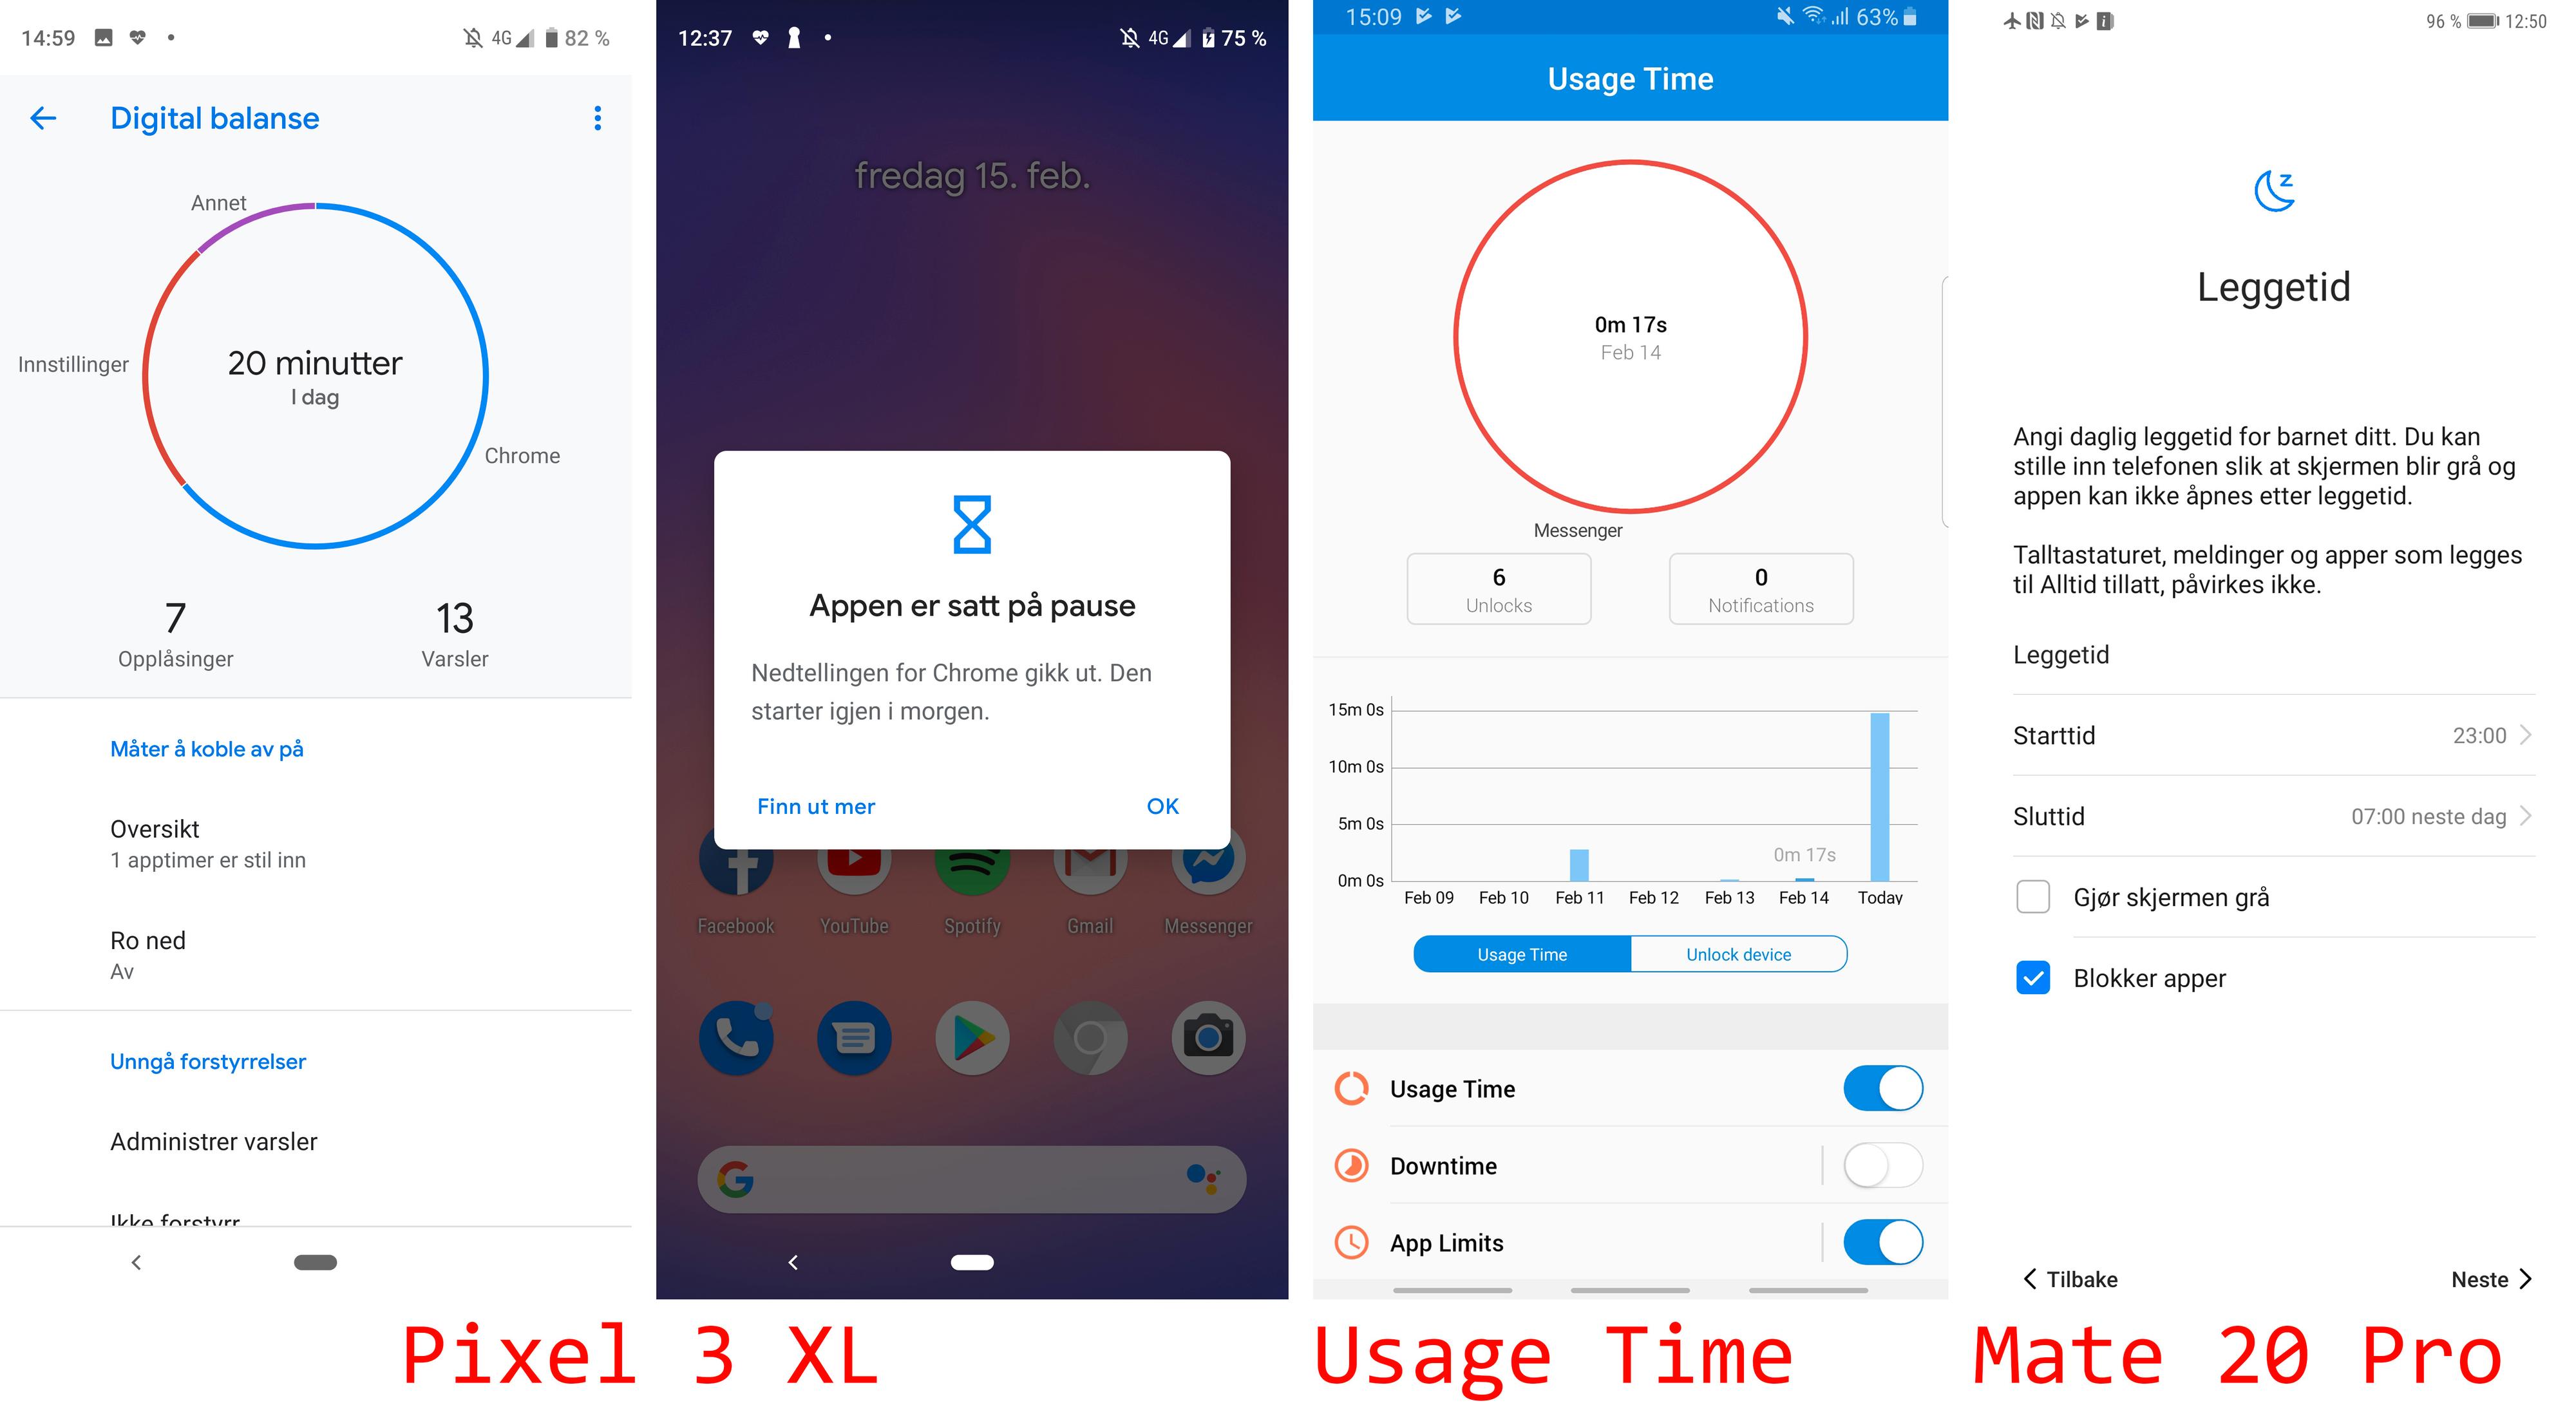 Google Pixel 3 XL og Huawei Mate 20 Pro har omfattende hjelpemidler for å styre tiden du bruker på mobilen. Galaxy Note 9 har ikke det, så der har vi lastet ned appen Usage Time fra Google Play.